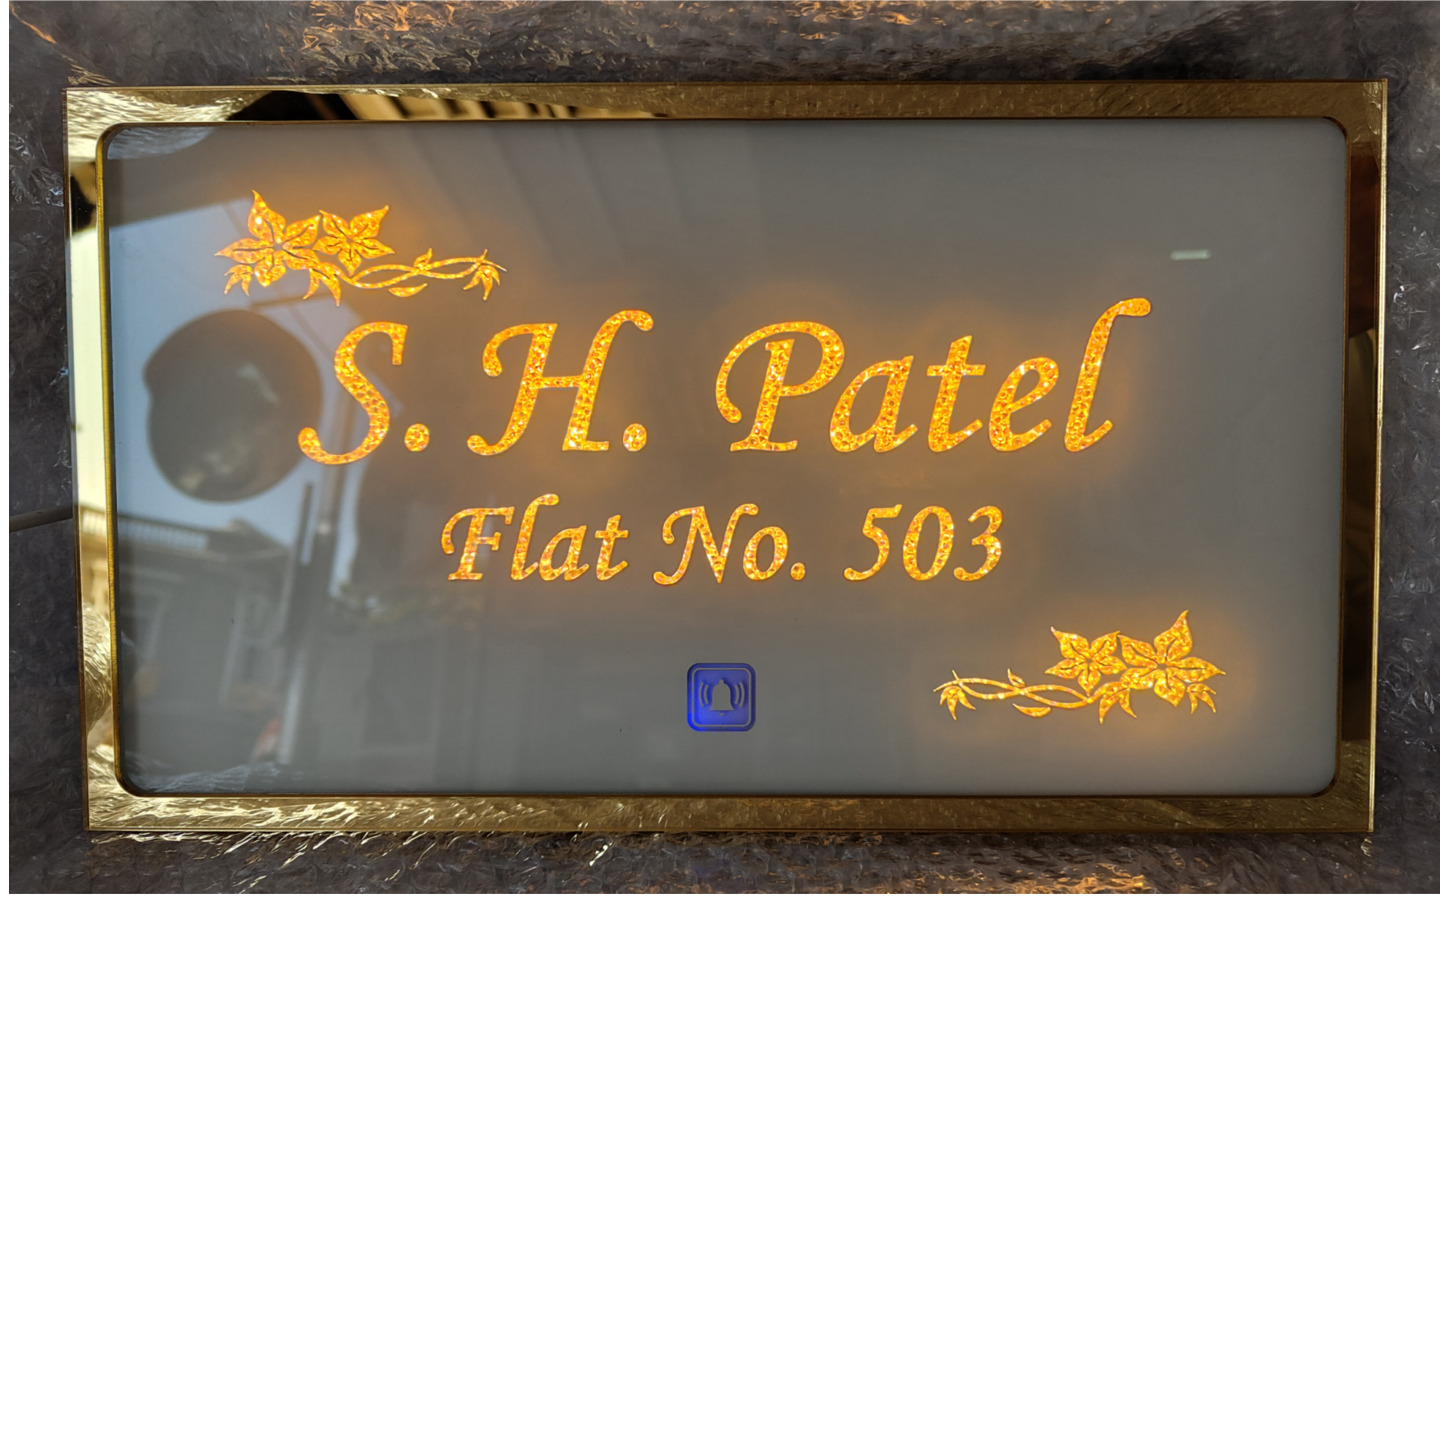 S. H. Patel